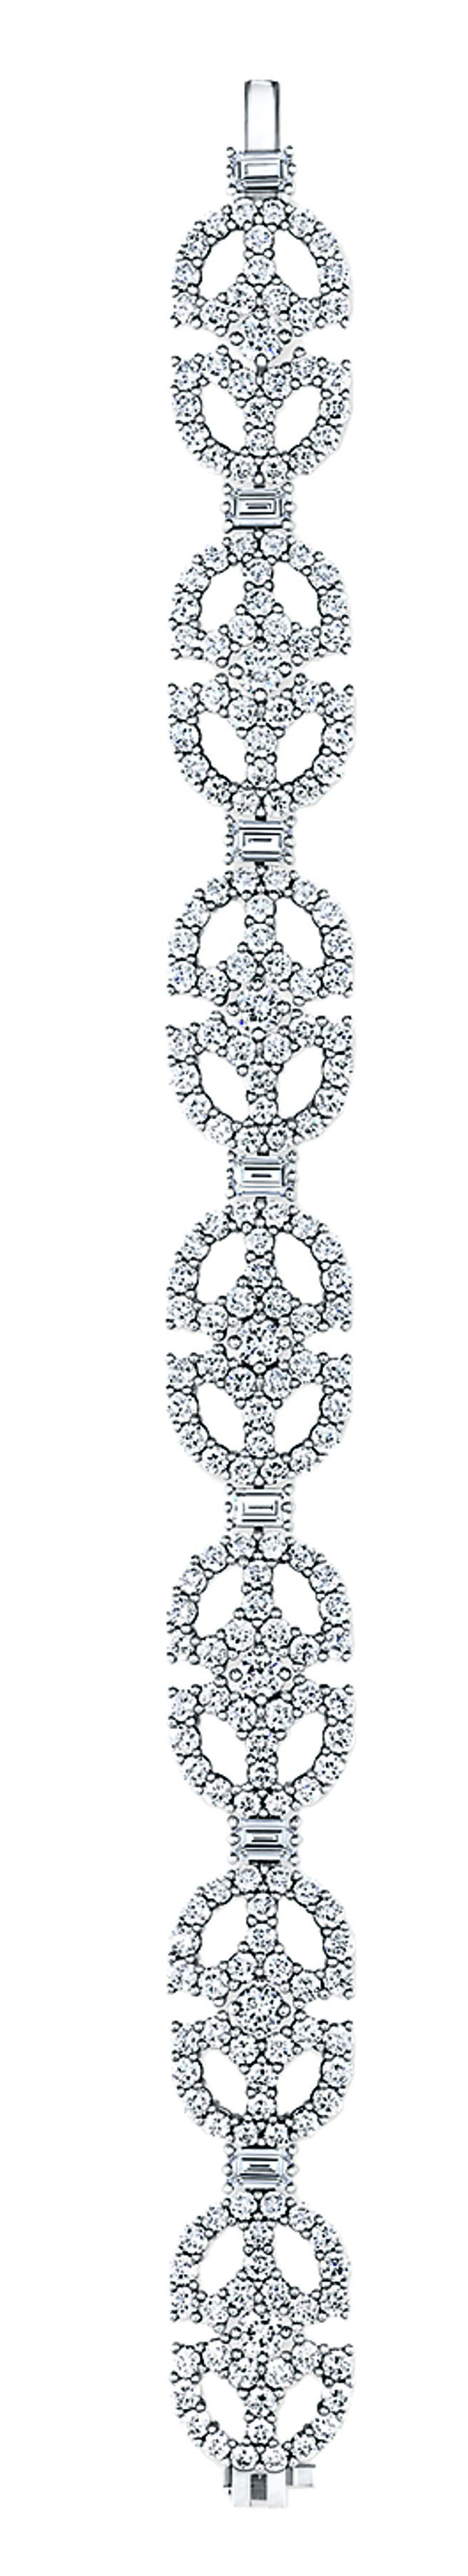 海瑞溫斯頓裝飾藝術Art Deco系列鑽石手鍊，演繹1930年代建築美學，鑲嵌鑽石總重14.46克拉，鑲嵌於鉑金底座。（Harry Winston提供）